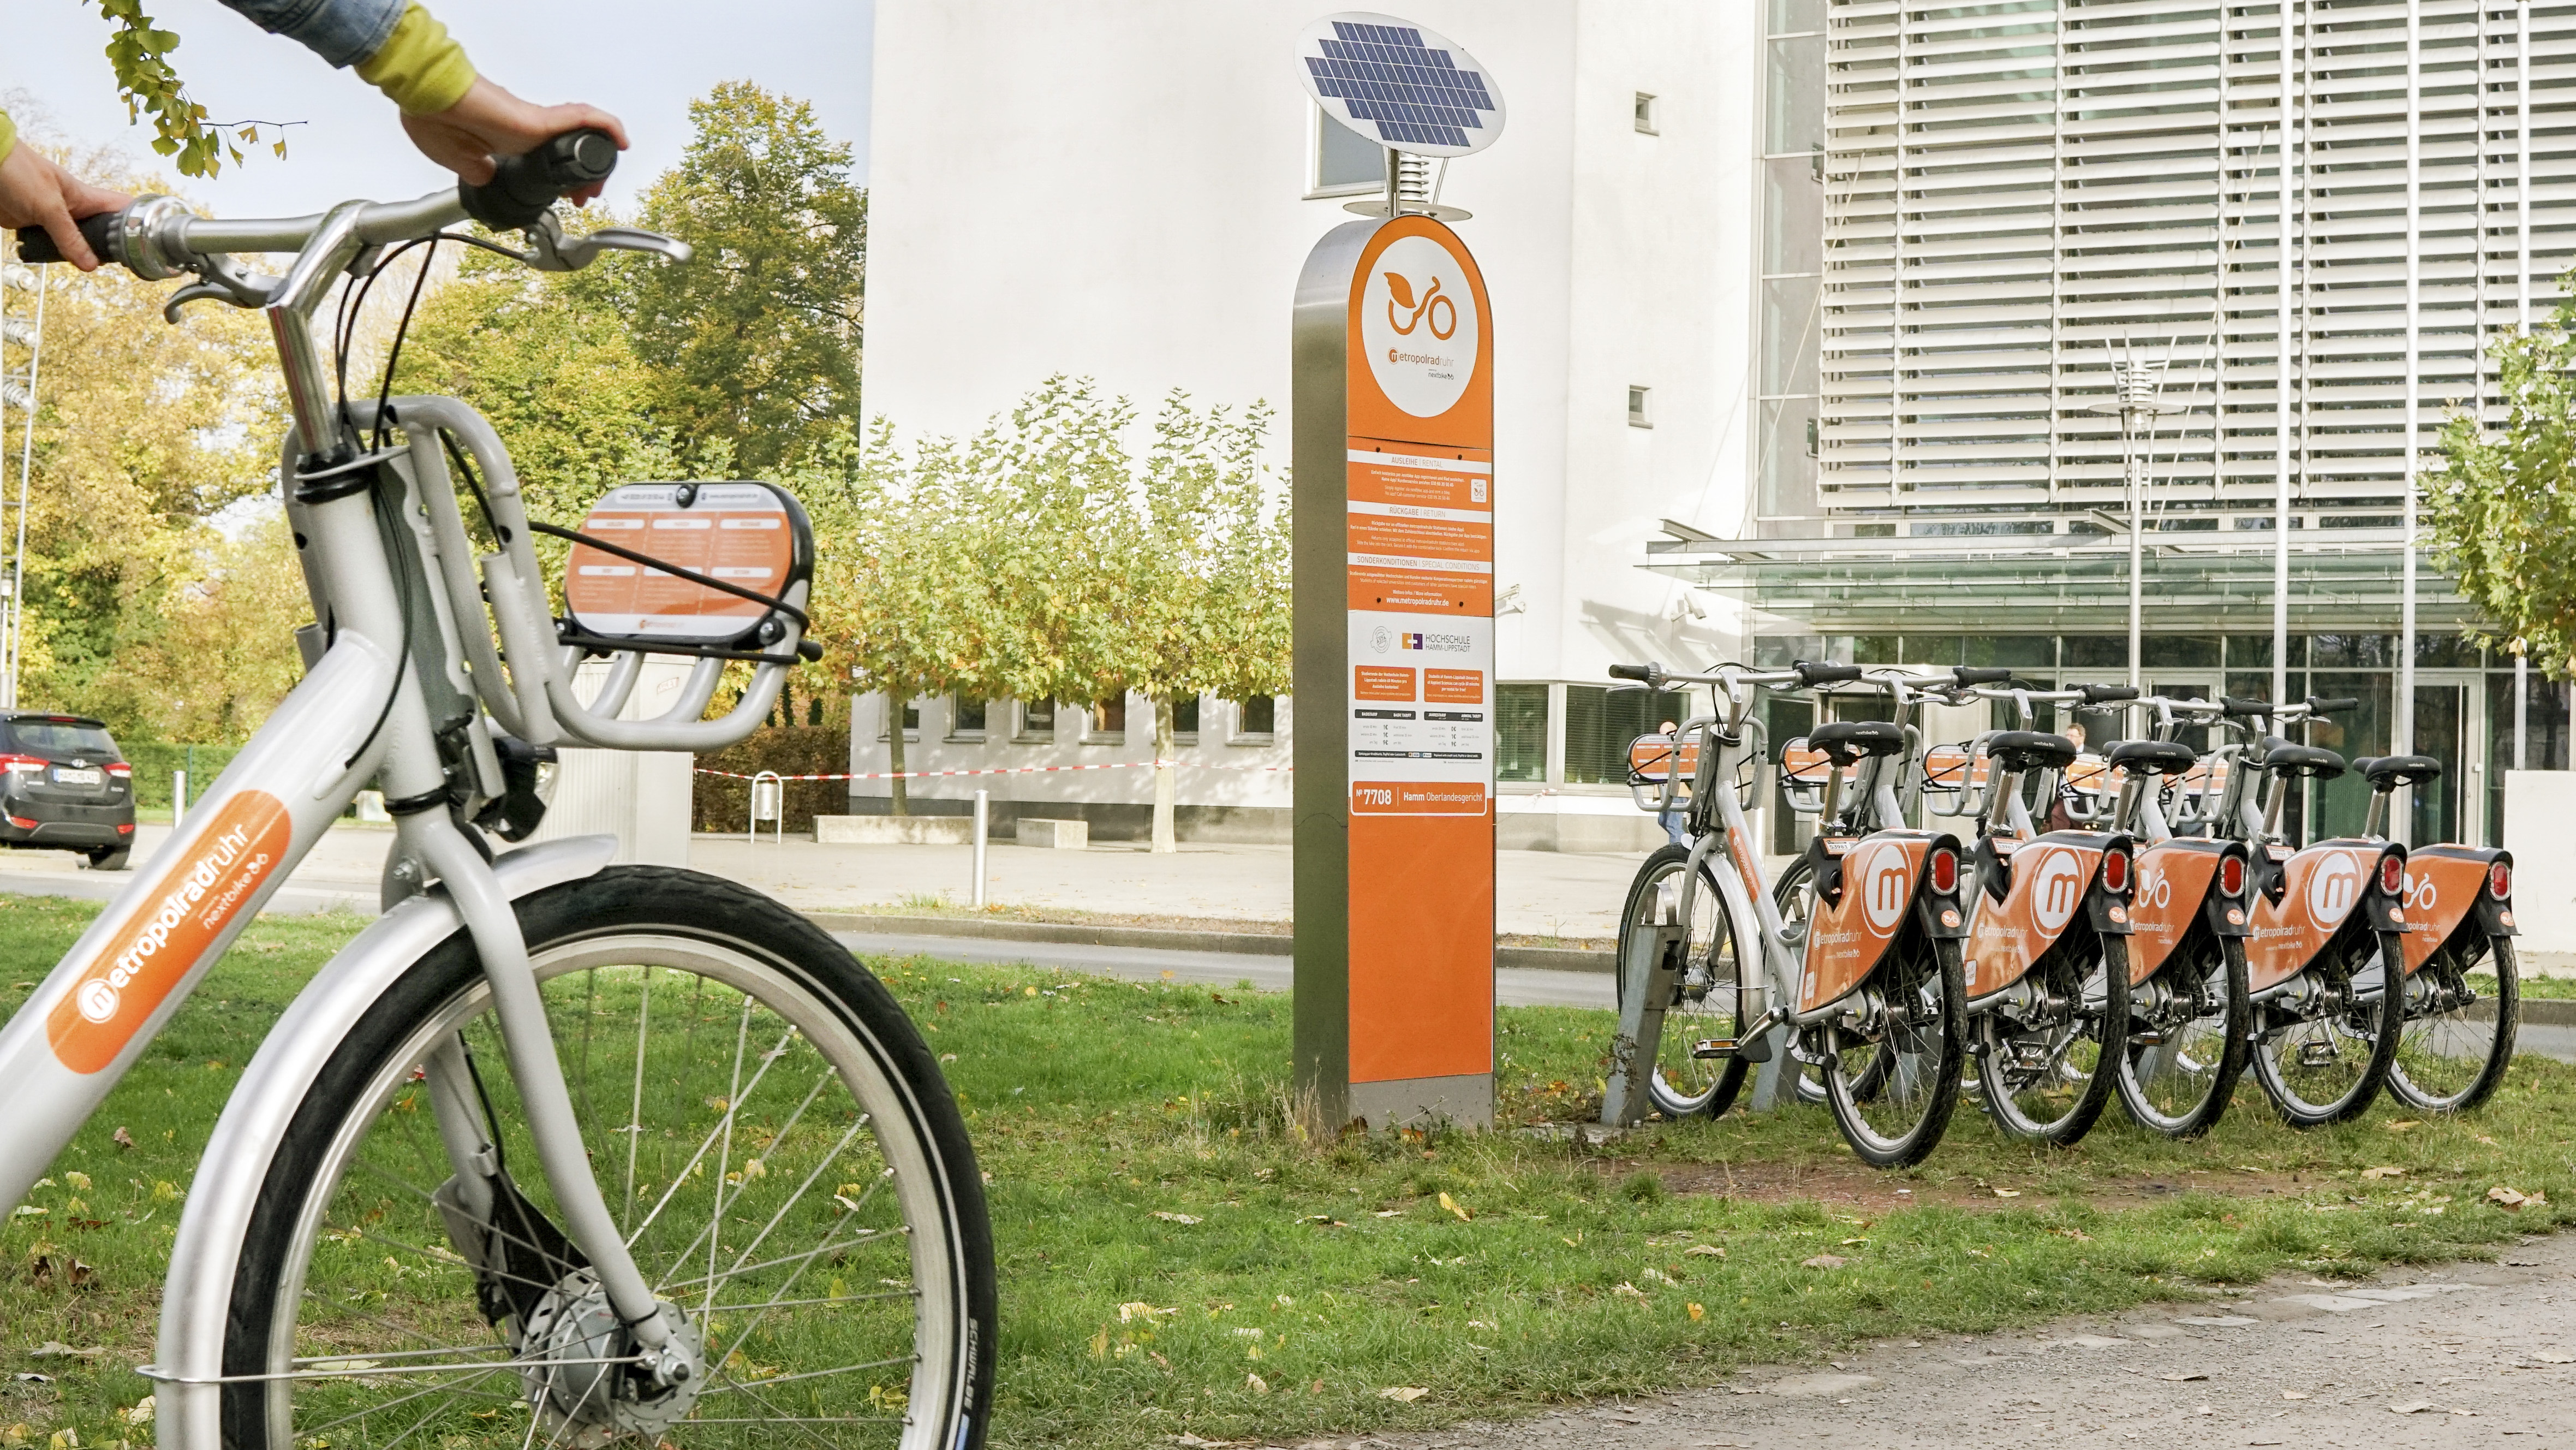 Leihstation mit vielen Fahrrädern vor einem großen Gebäude in urbaner Umgebung. 